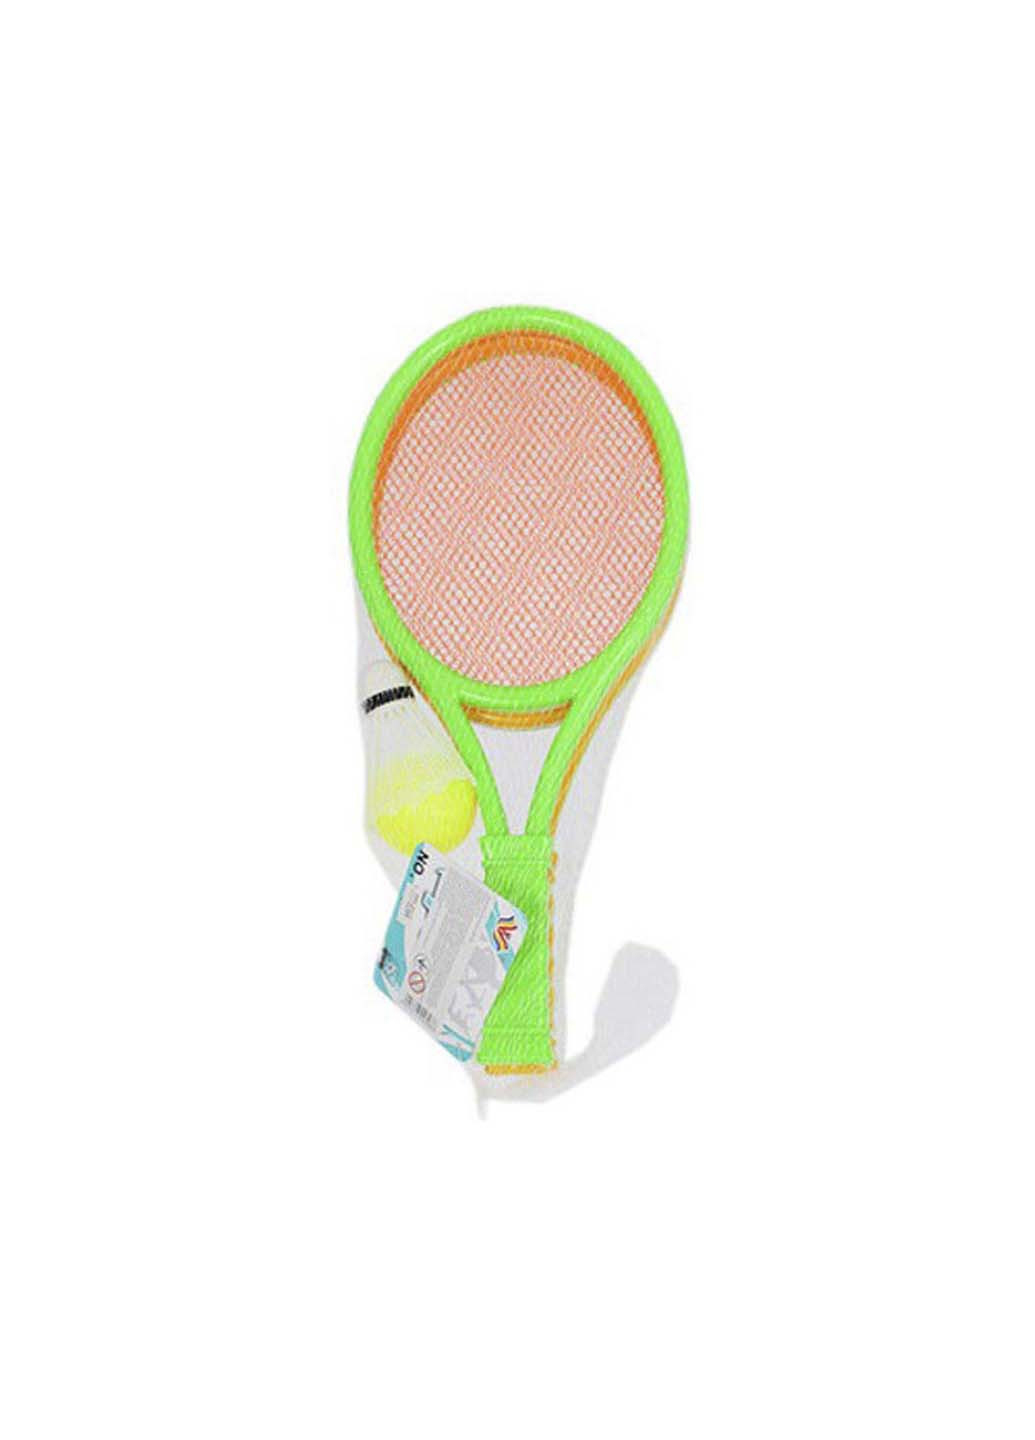 Игровой набор для игры в теннис MR 0662 ракетка 37 см Bambi (256185992)